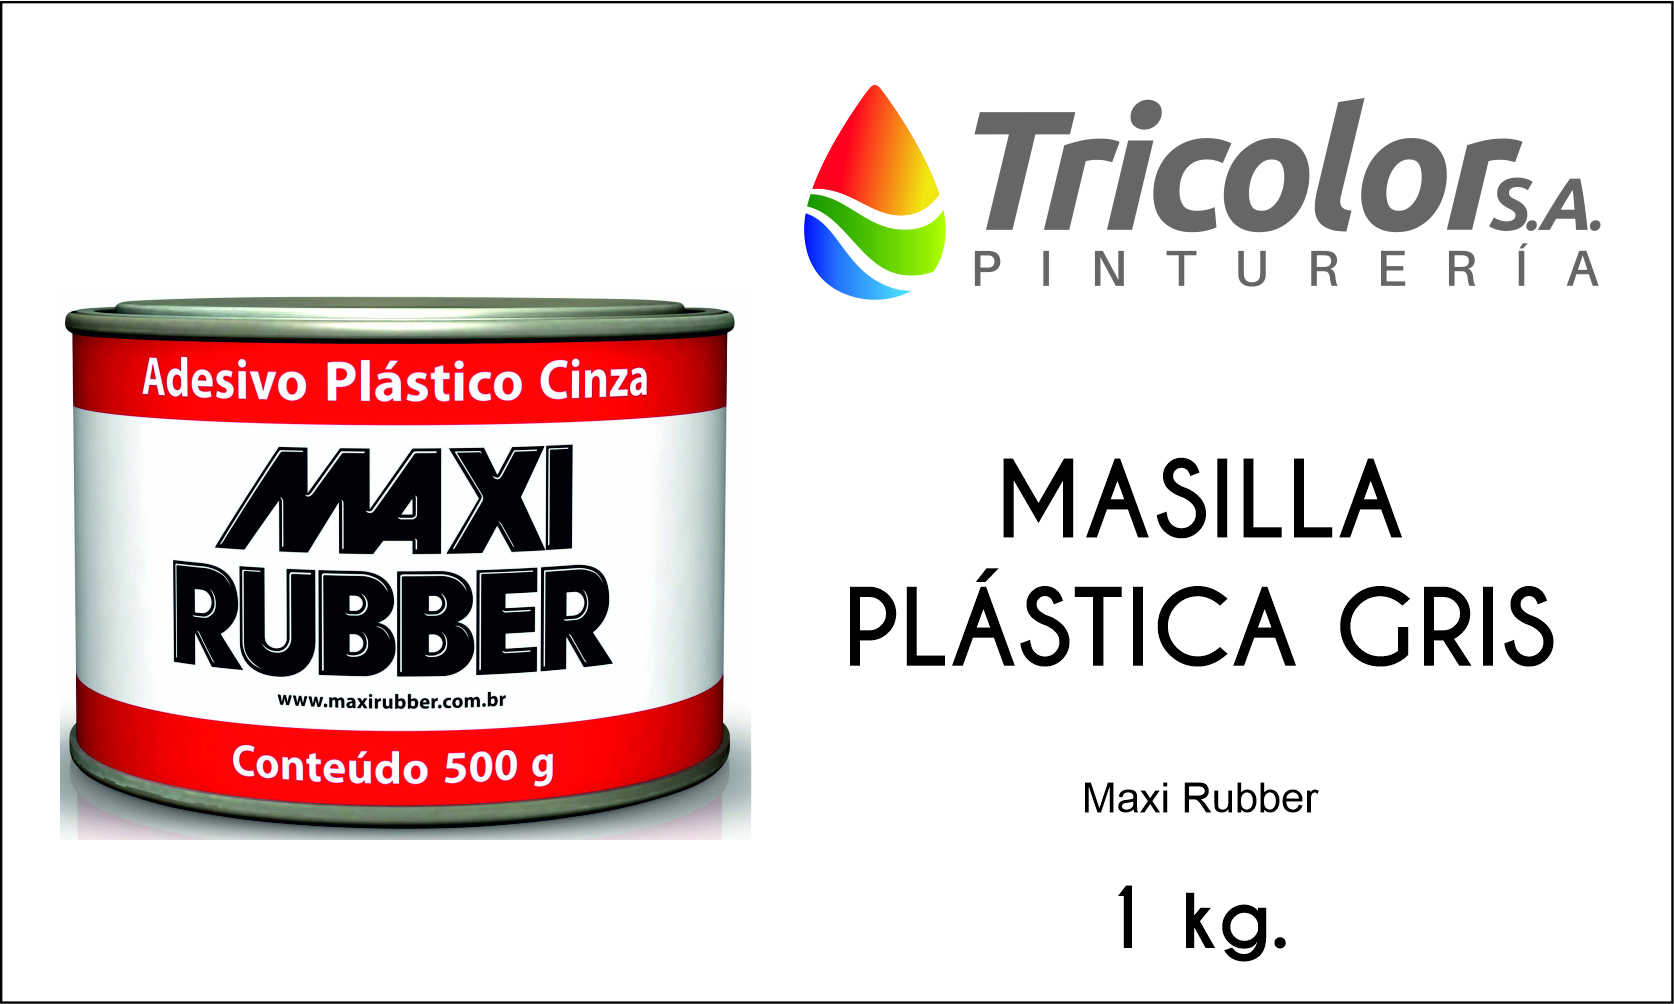 MASILLA PLASTICA GRIS – MAXI RUBBER – Tricolor S.A.